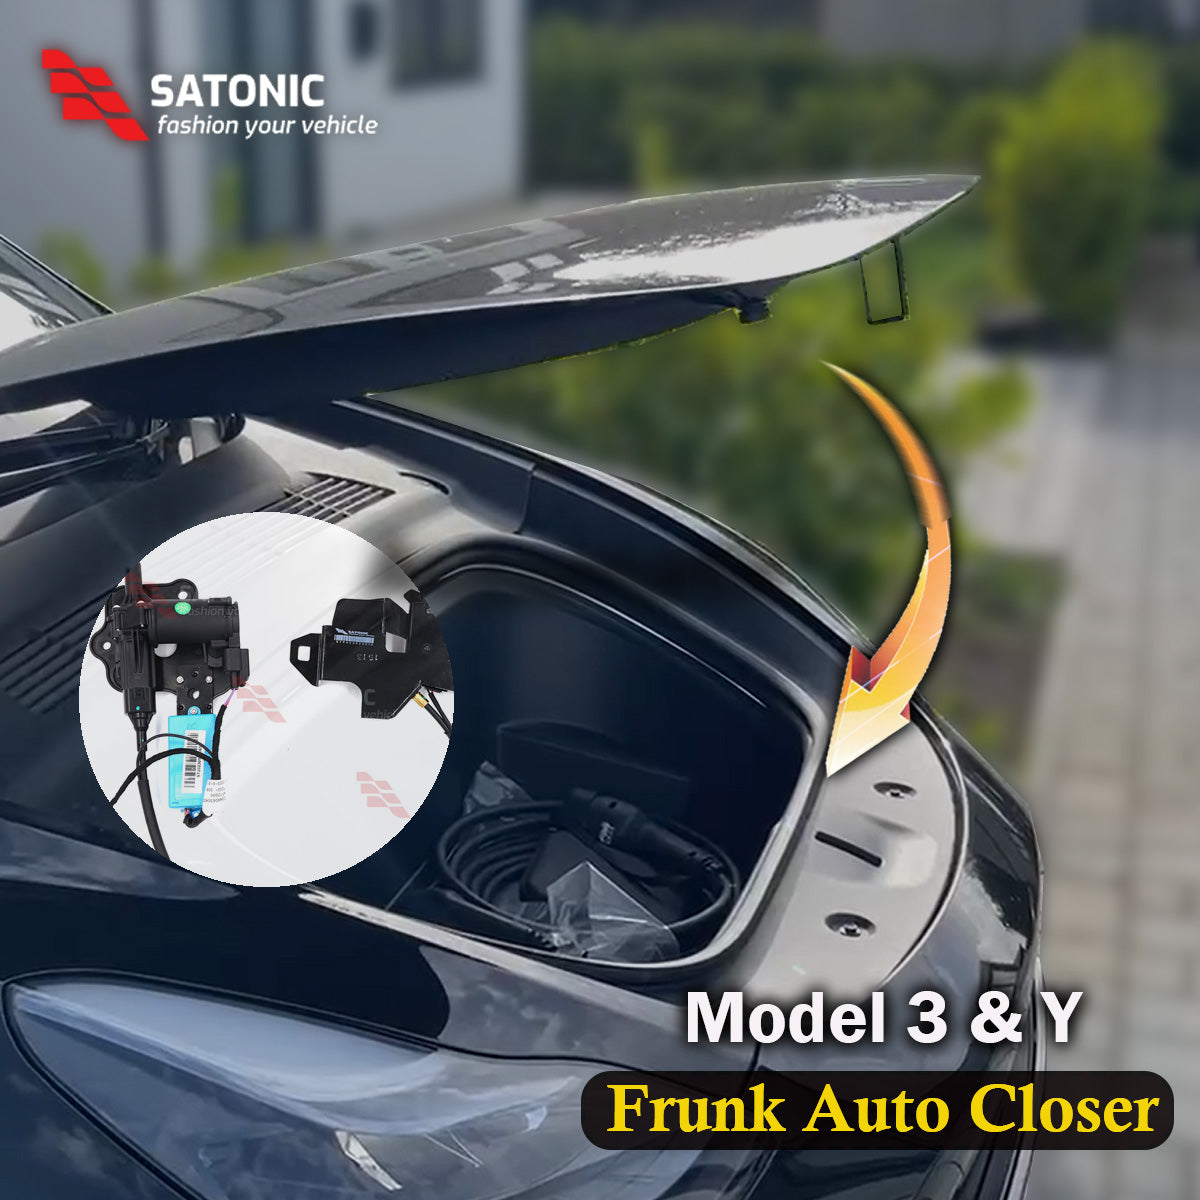 Model 3 & Y Frunk Soft Closing Motor